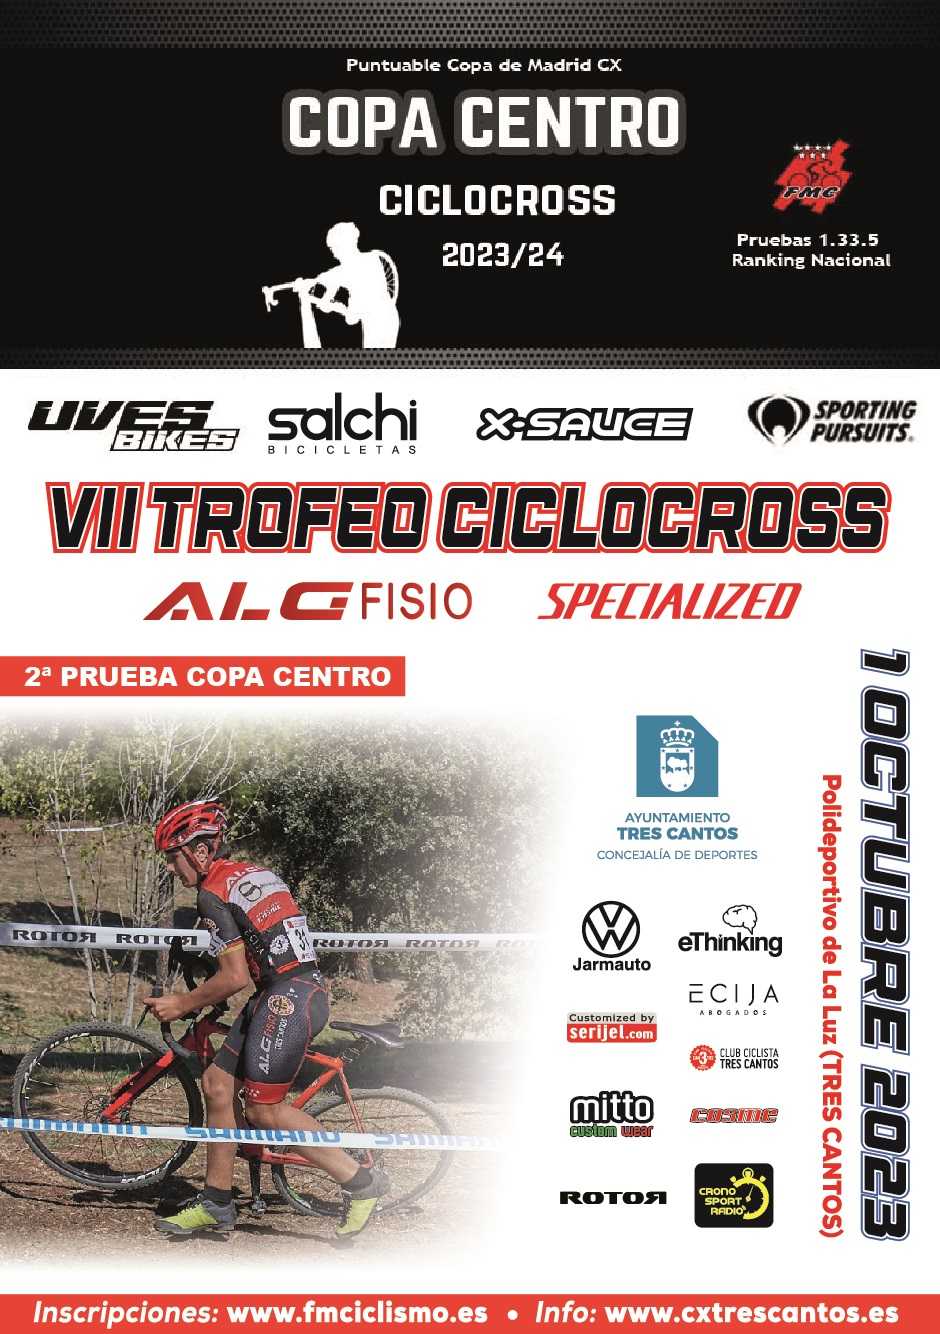 El 1 de octubre se disputa el VII Ciclocross ALG Fisio-Specialized.